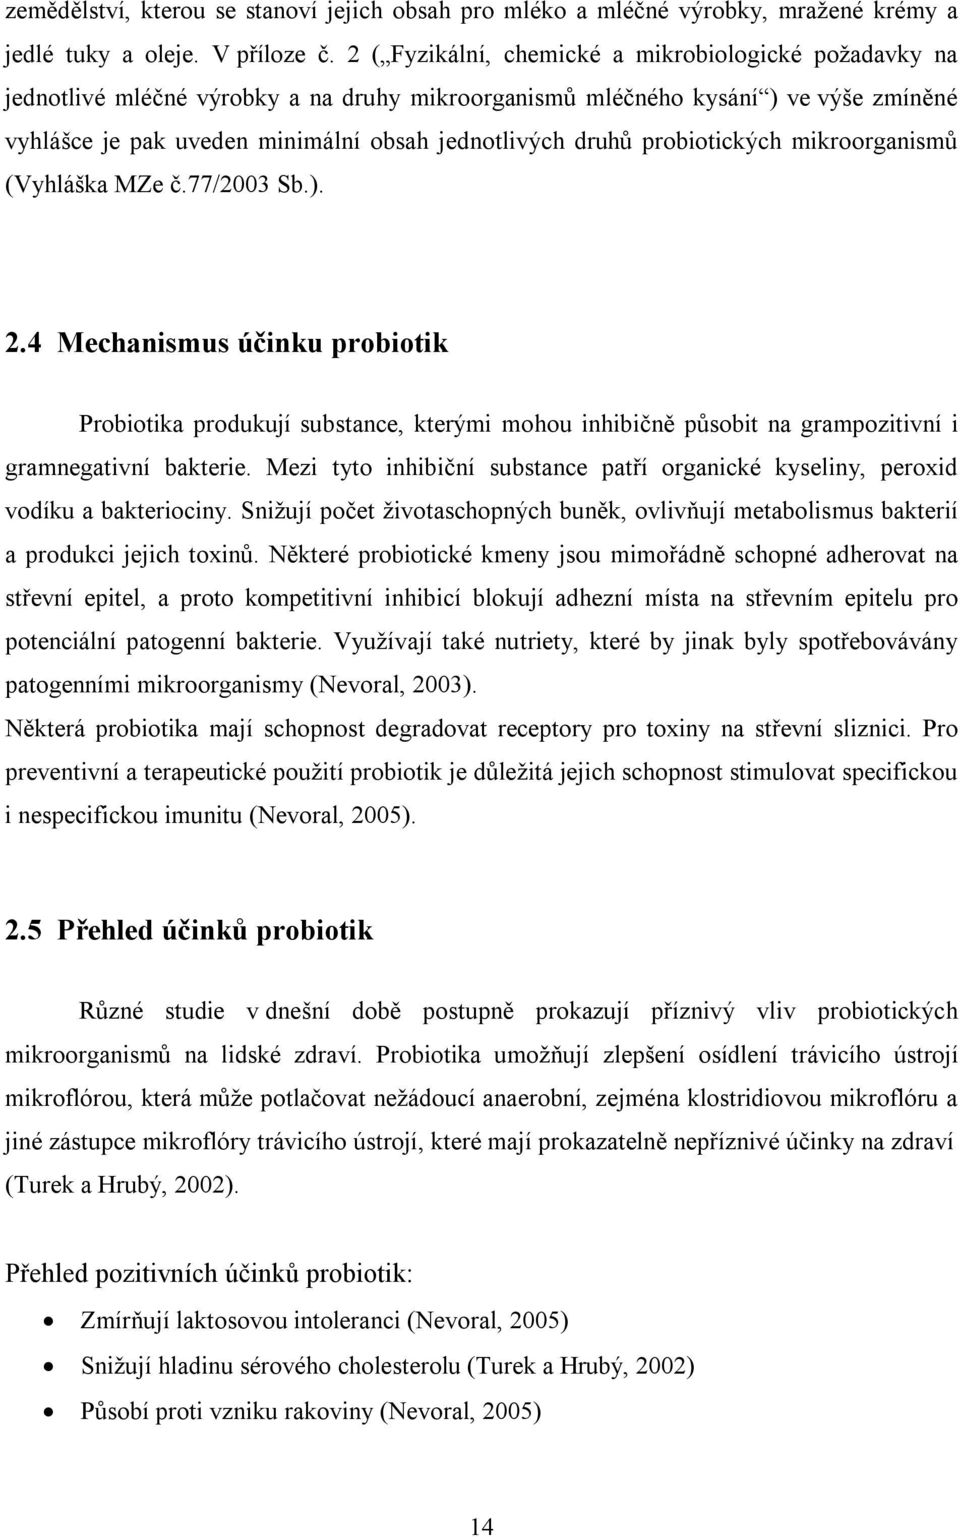 probiotických mikroorganismů (Vyhláška MZe č.77/2003 Sb.). 2.4 Mechanismus účinku probiotik Probiotika produkují substance, kterými mohou inhibičně působit na grampozitivní i gramnegativní bakterie.